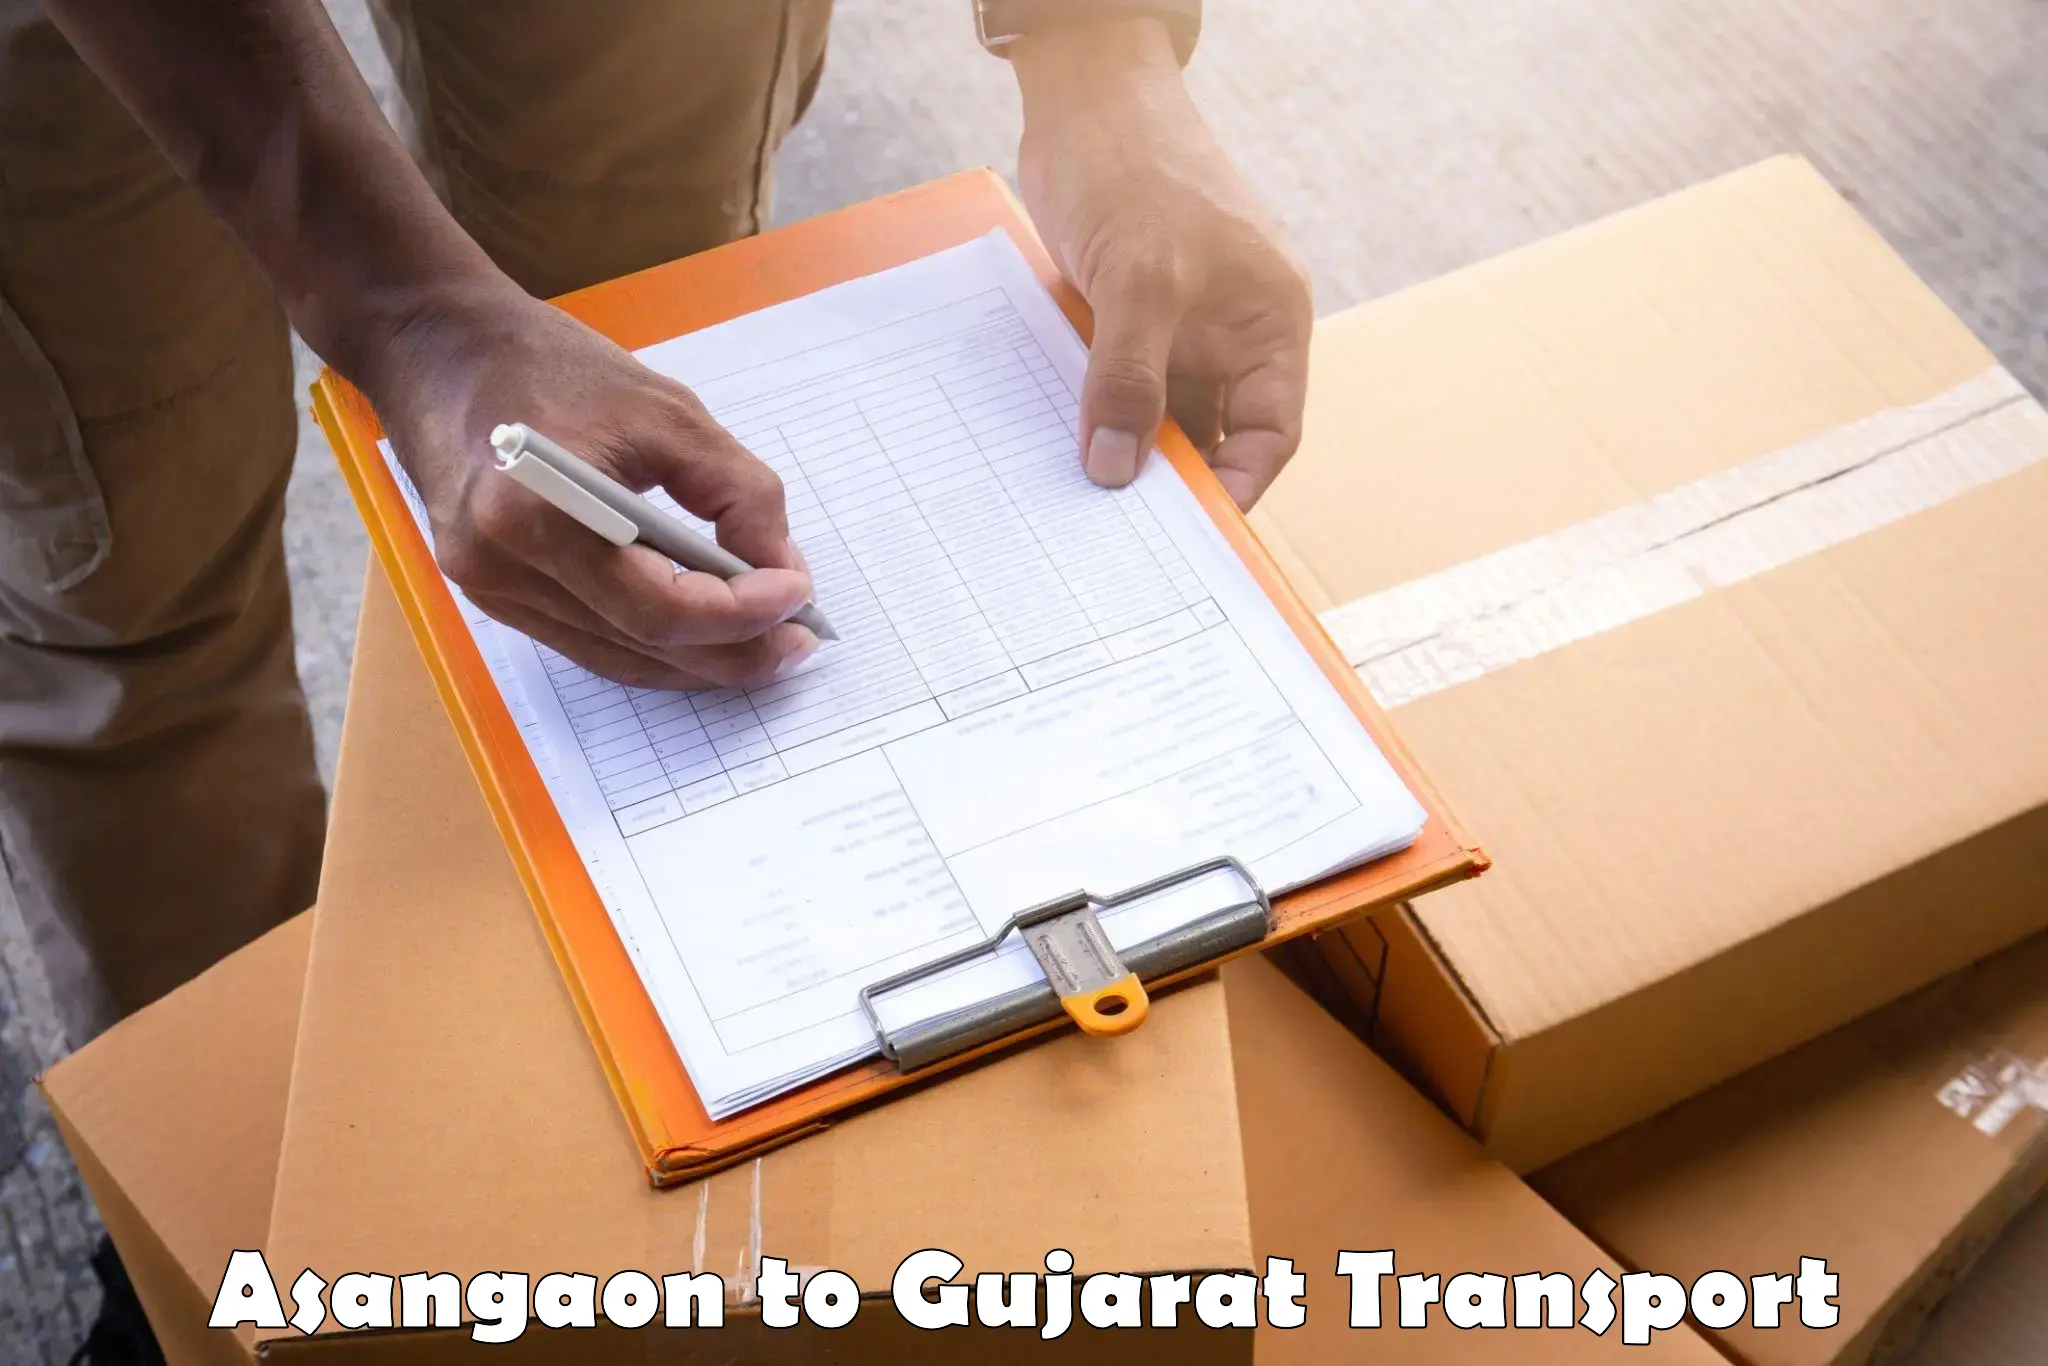 Furniture transport service Asangaon to Katodara